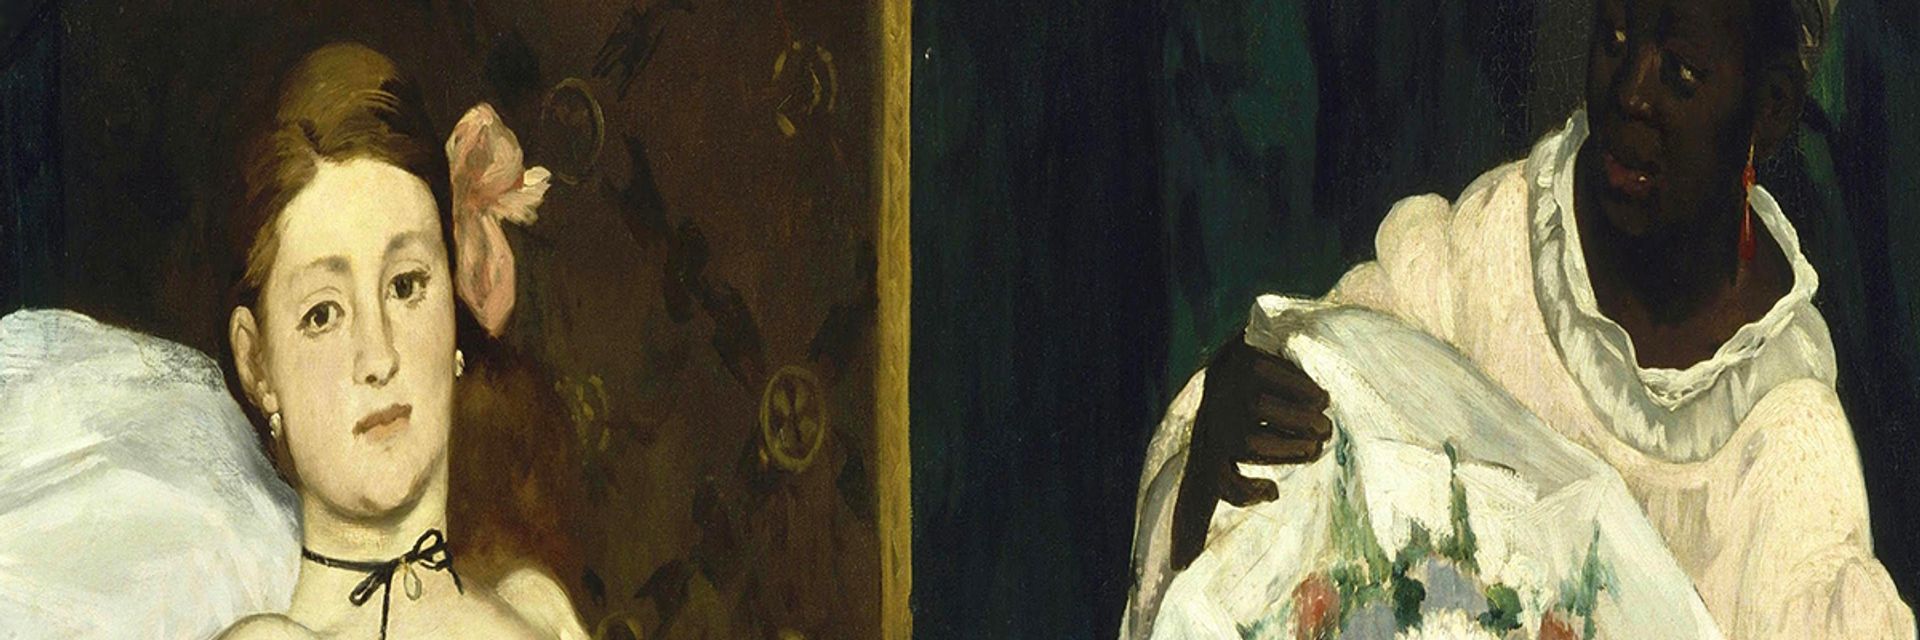 Édouard Manet and the Revealing Gaze of Modern Art